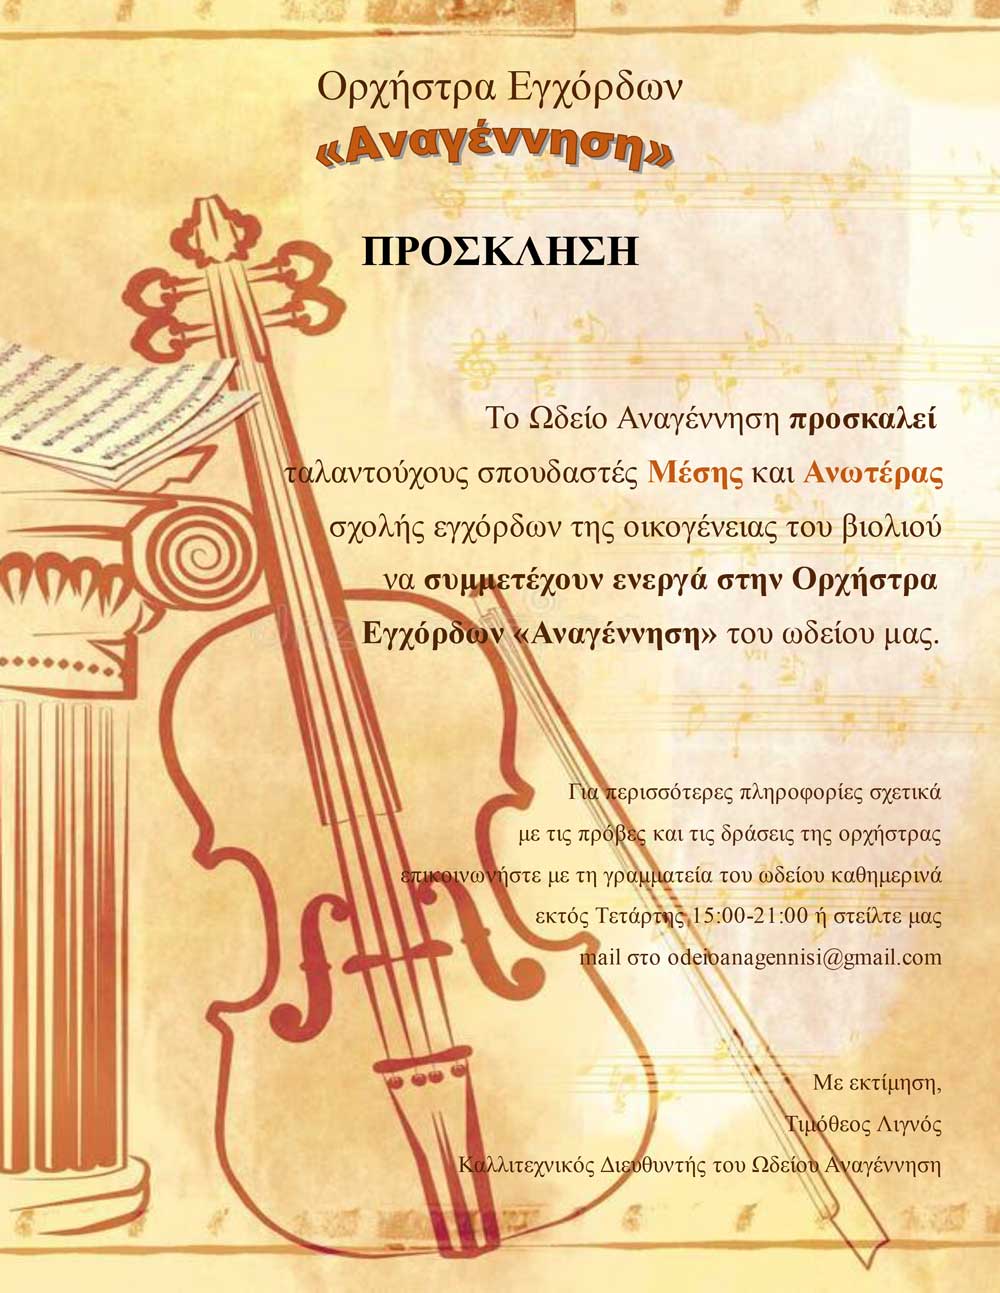 Πρόσκληση – Ορχήστρα Εγχόρδων